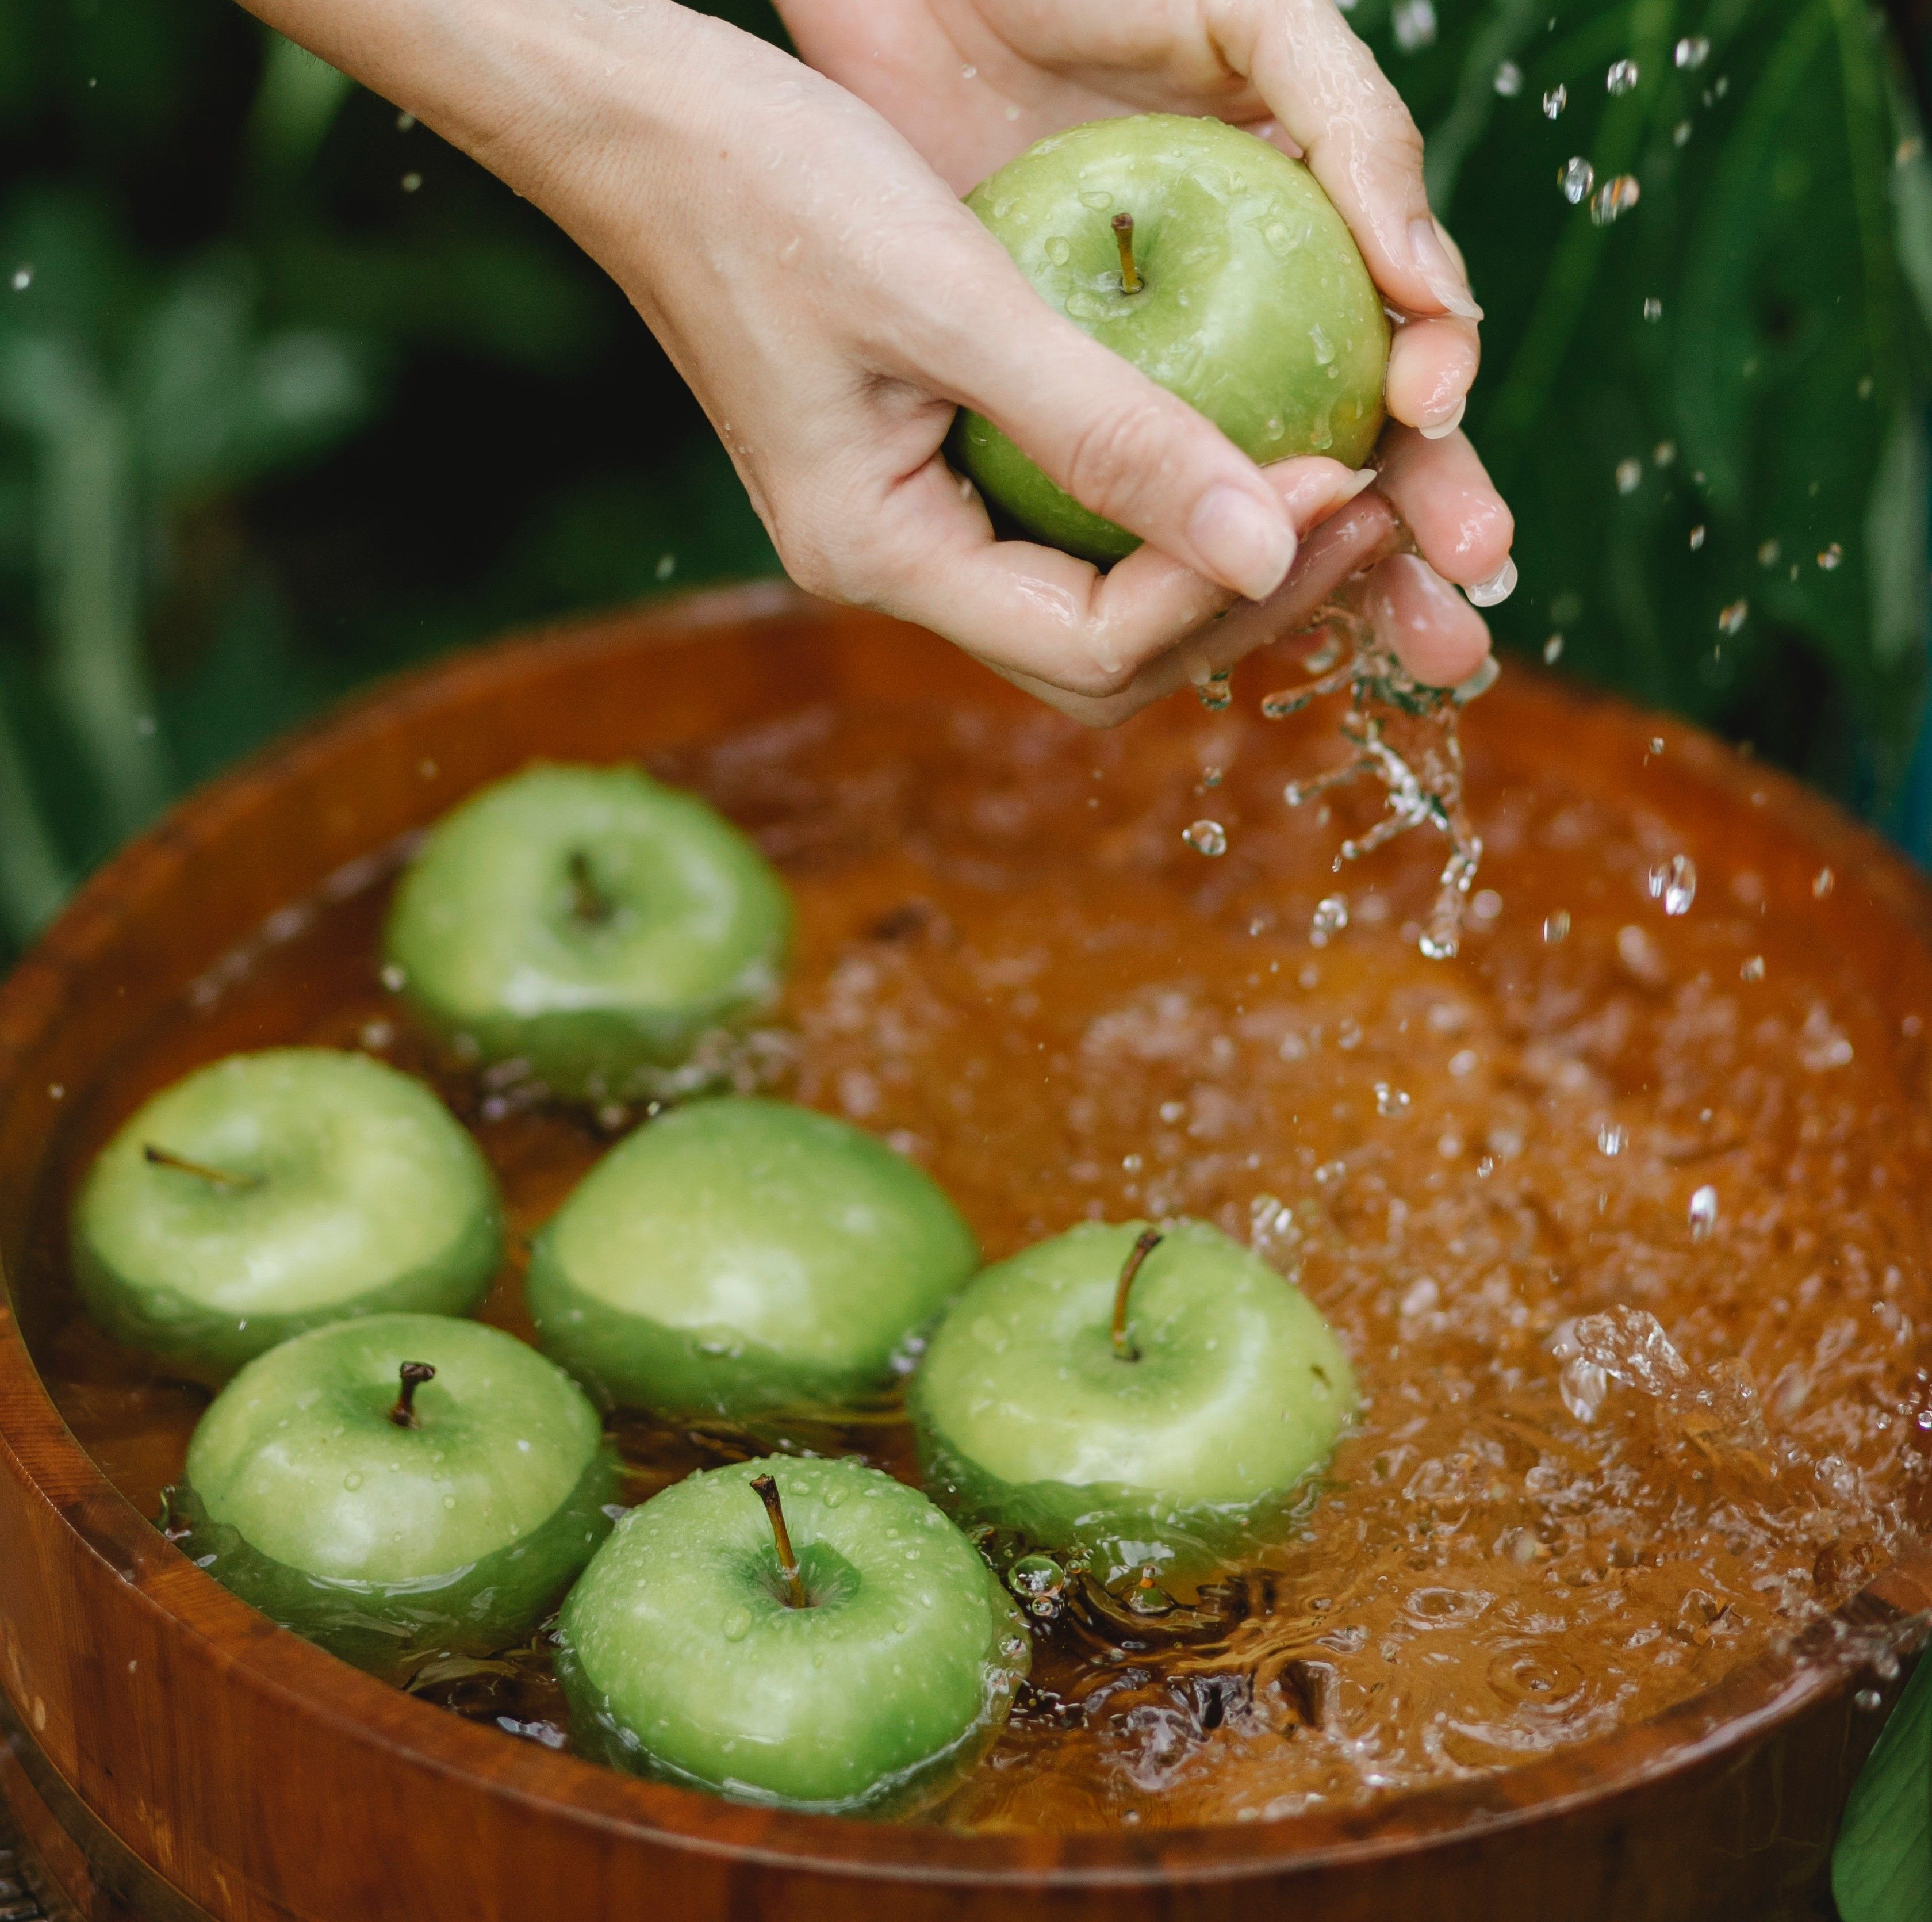 Une personne rince des pommes vertes avec de l'eau